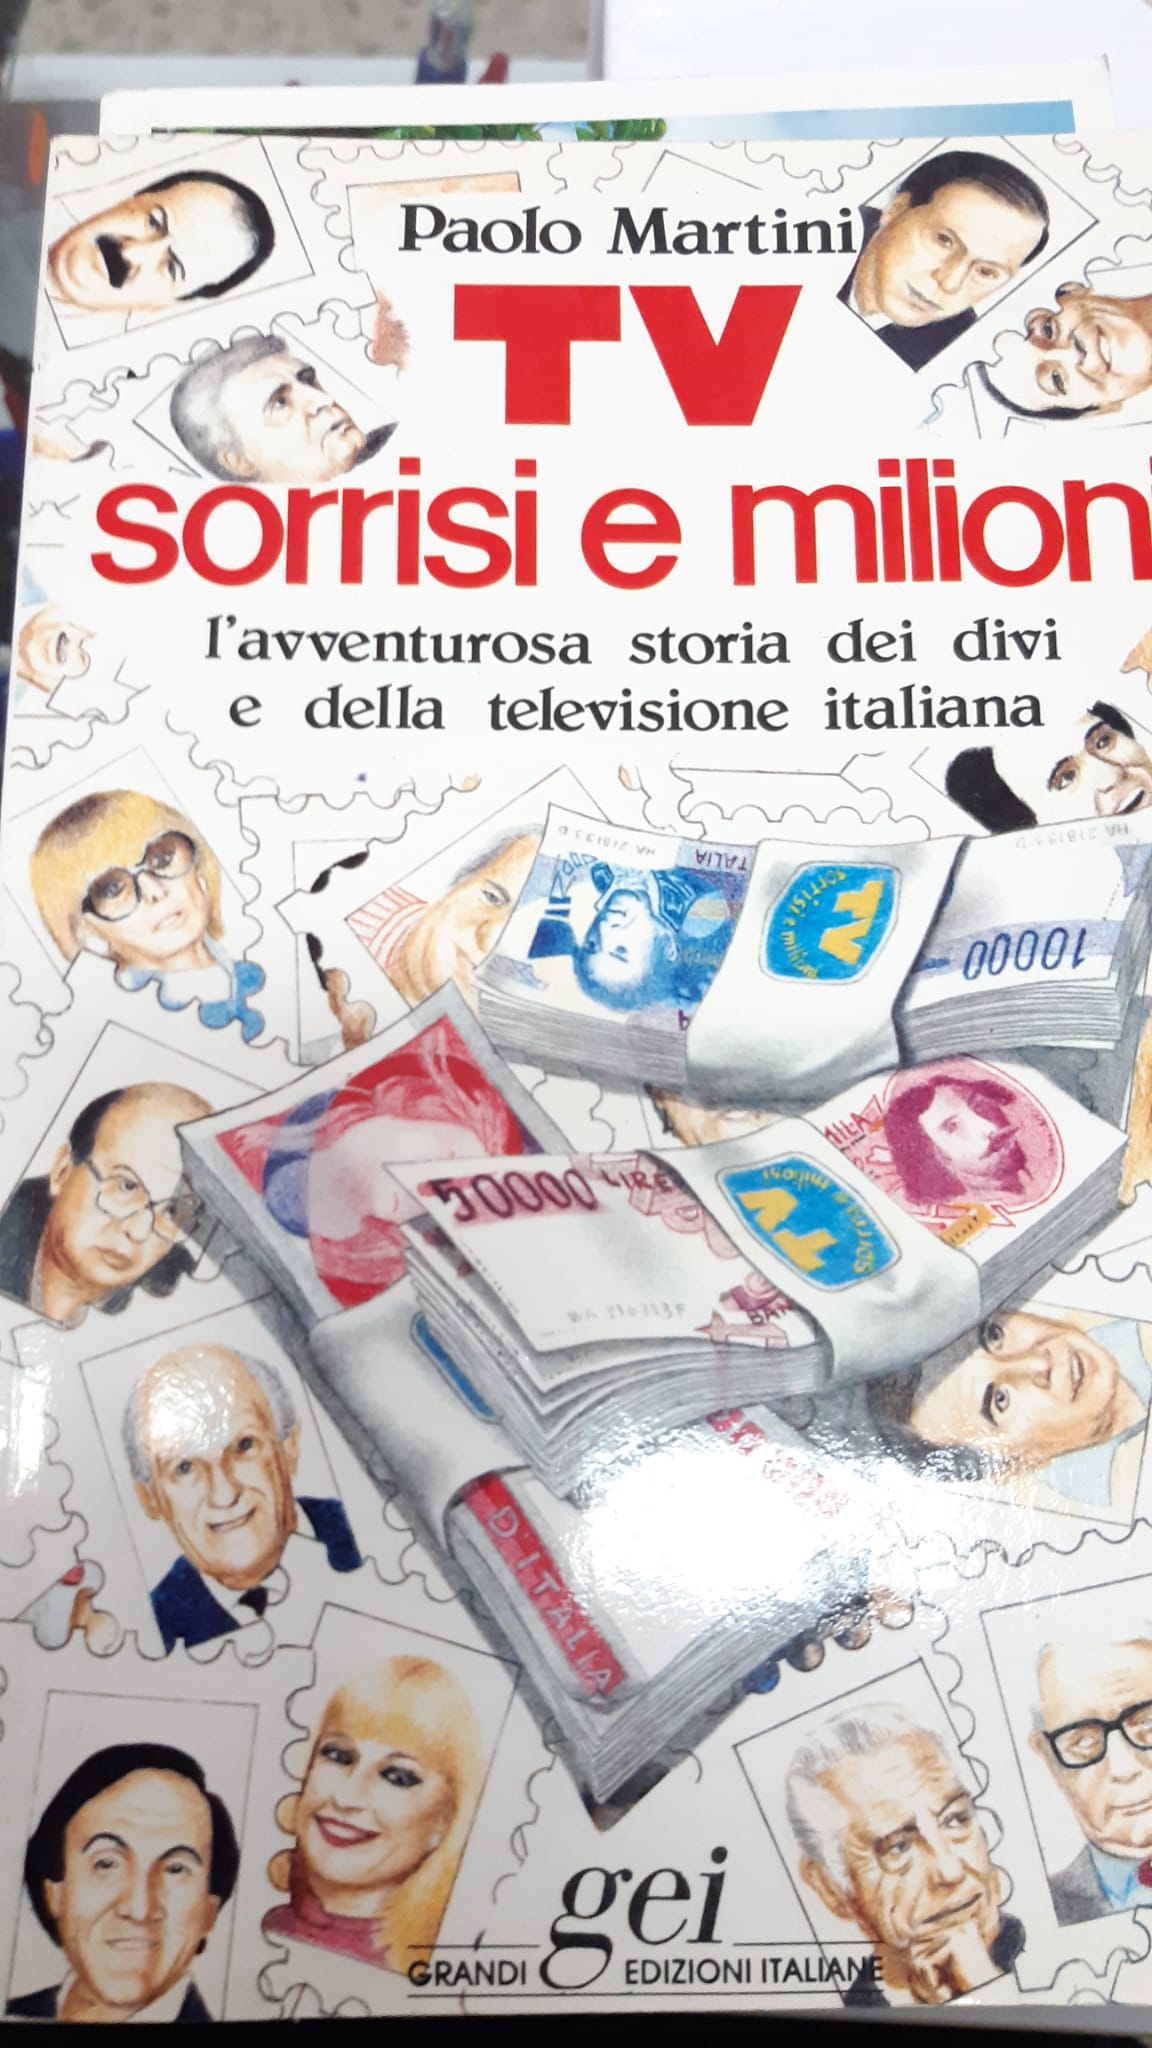 TV, sorrisi e milioni: L'avventurosa storia dei divi e della televisione italiana (Italian Edition)